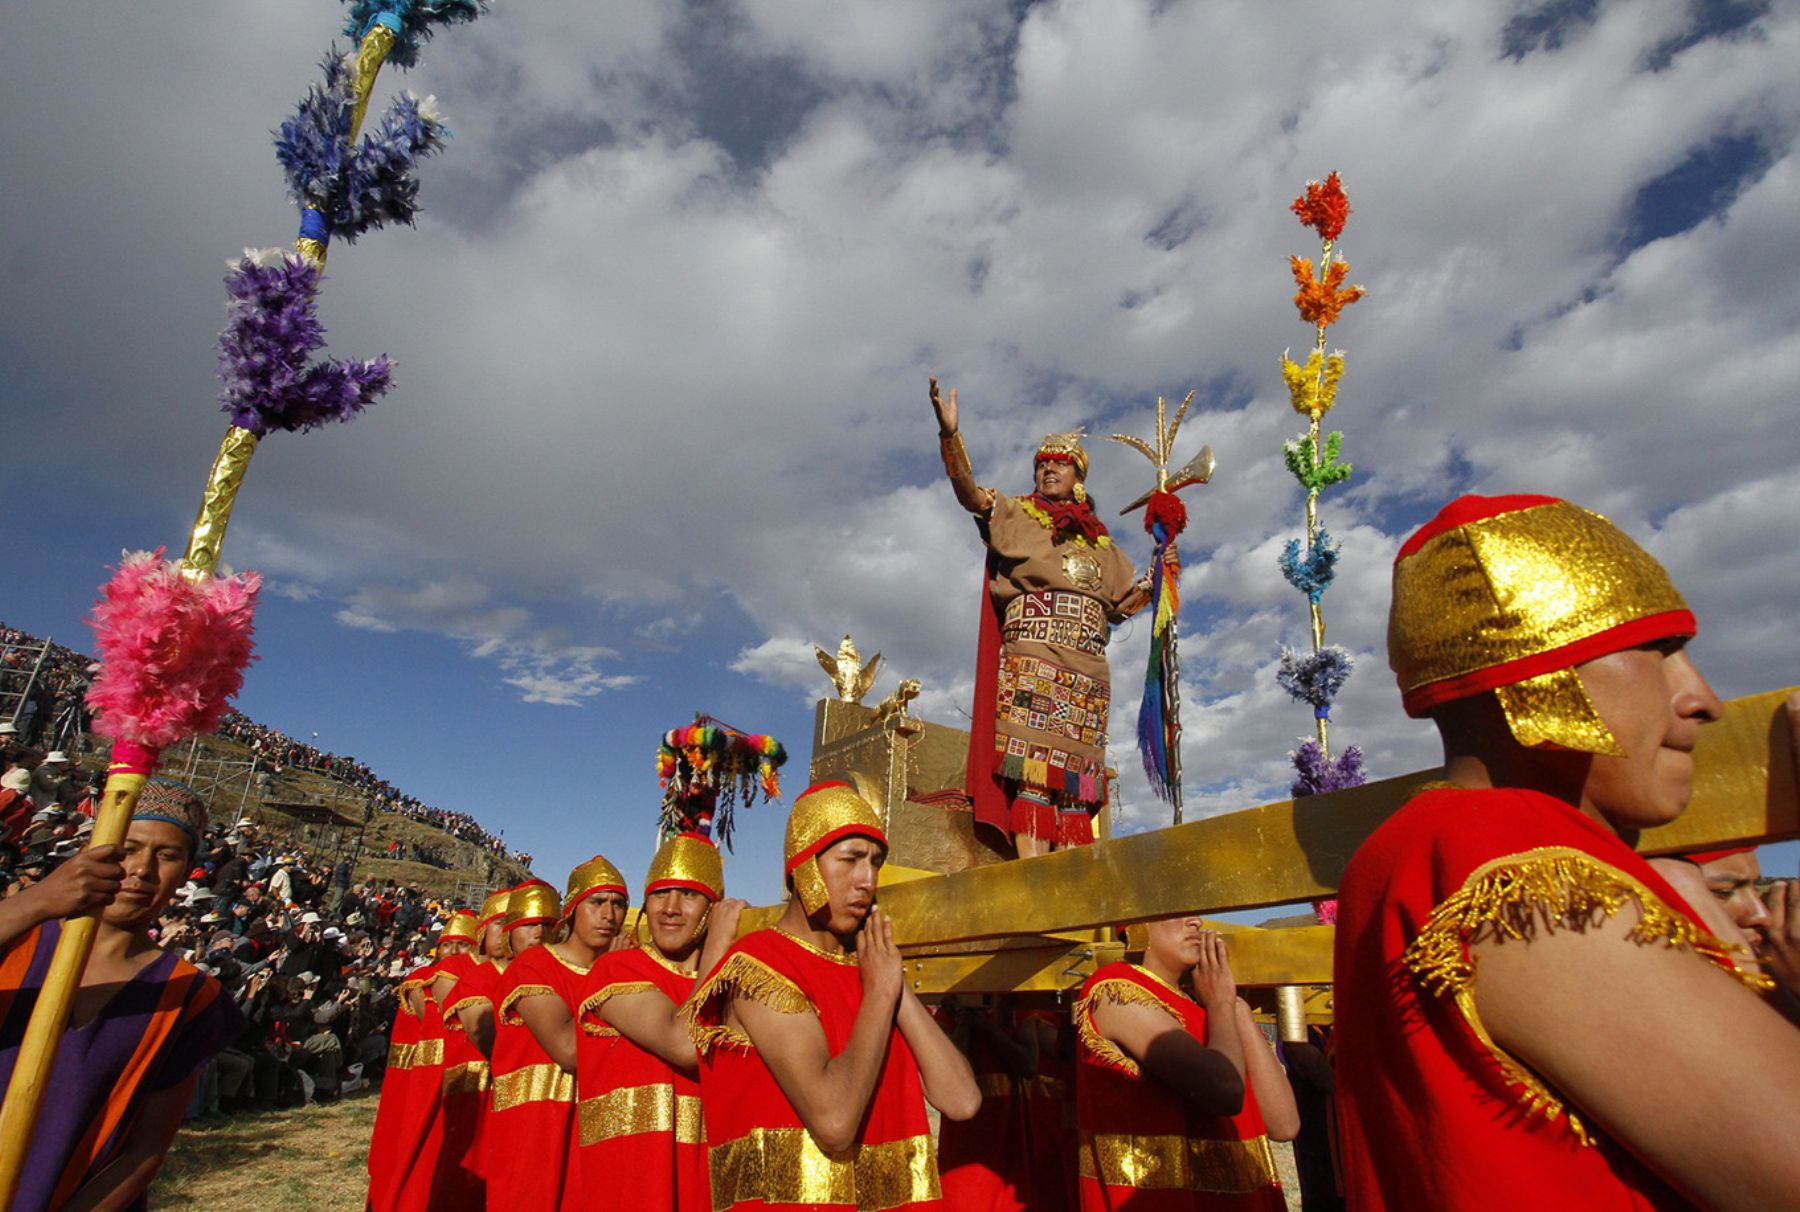 El Inti Raymi o Fiesta del Sol, que rinde culto a la deidad más importante de los incas, fue declarada por la Ley 27431 del año 2001 como Patrimonio Cultural de la Nación, así como Acto Oficial y Principal Ceremonia Ritual de Identidad Nacional. ANDINA/Percy Hurtado Santillán